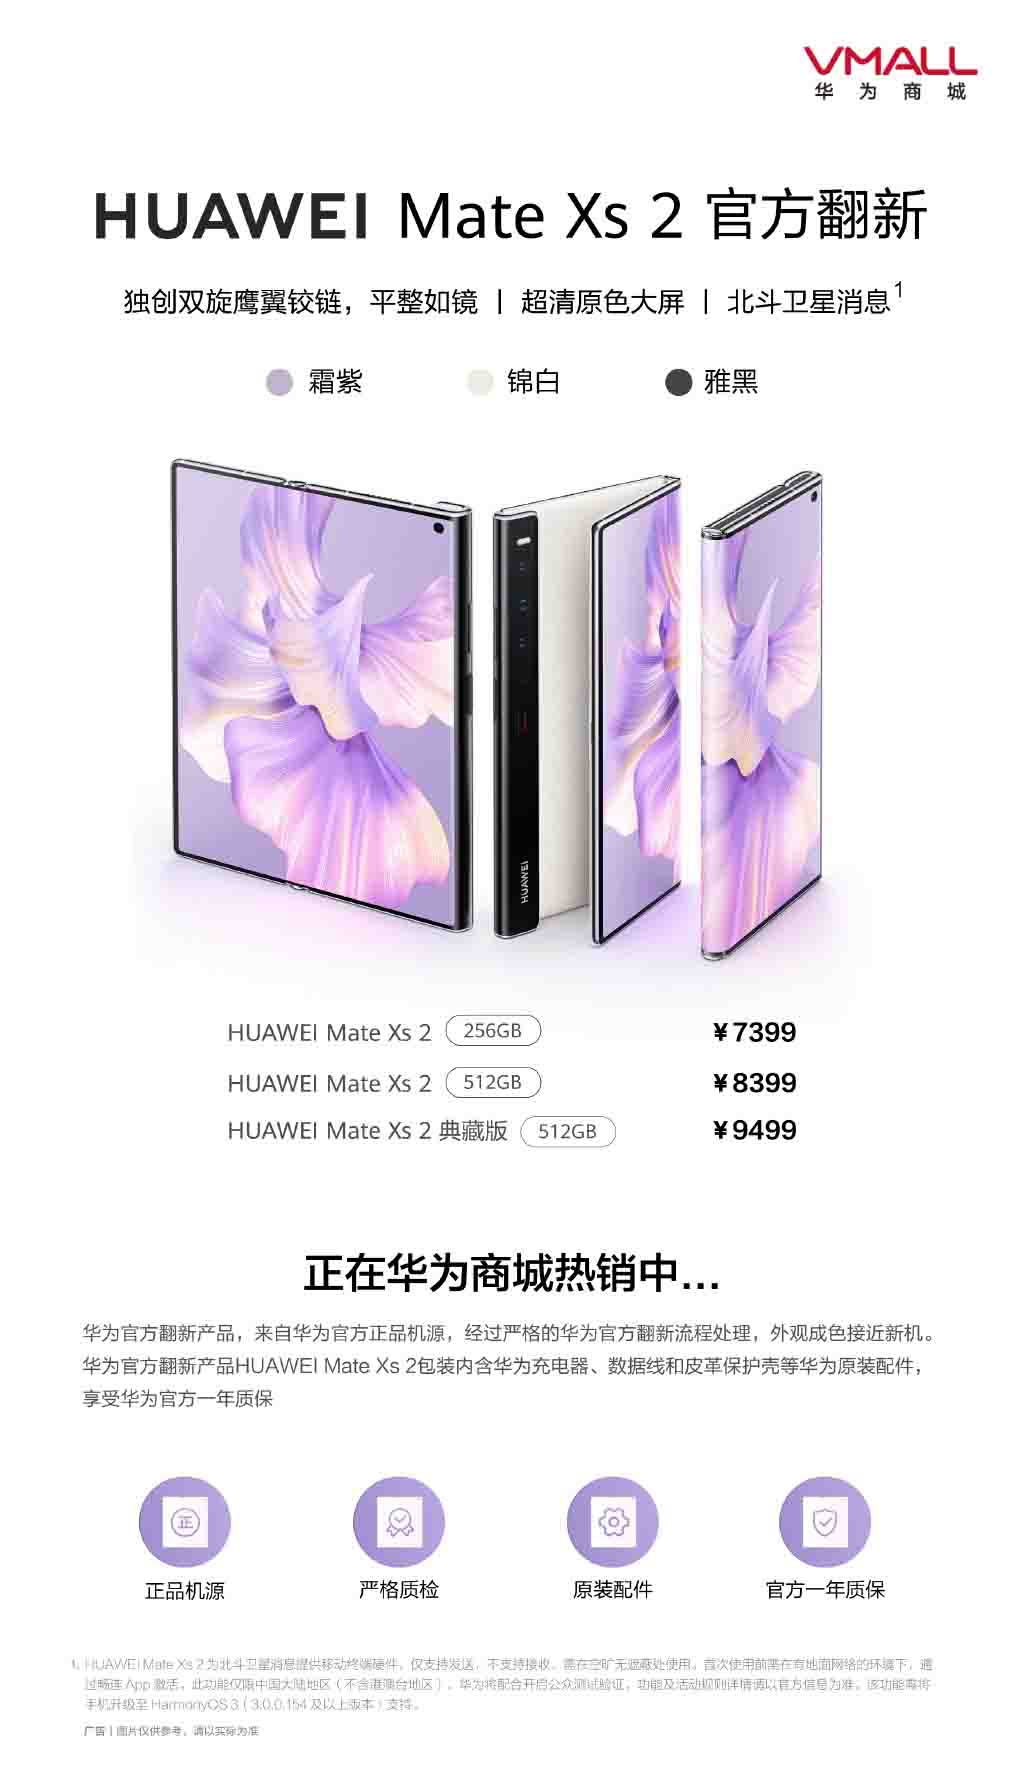 Huawei Mate Xs 2 отремонтированный